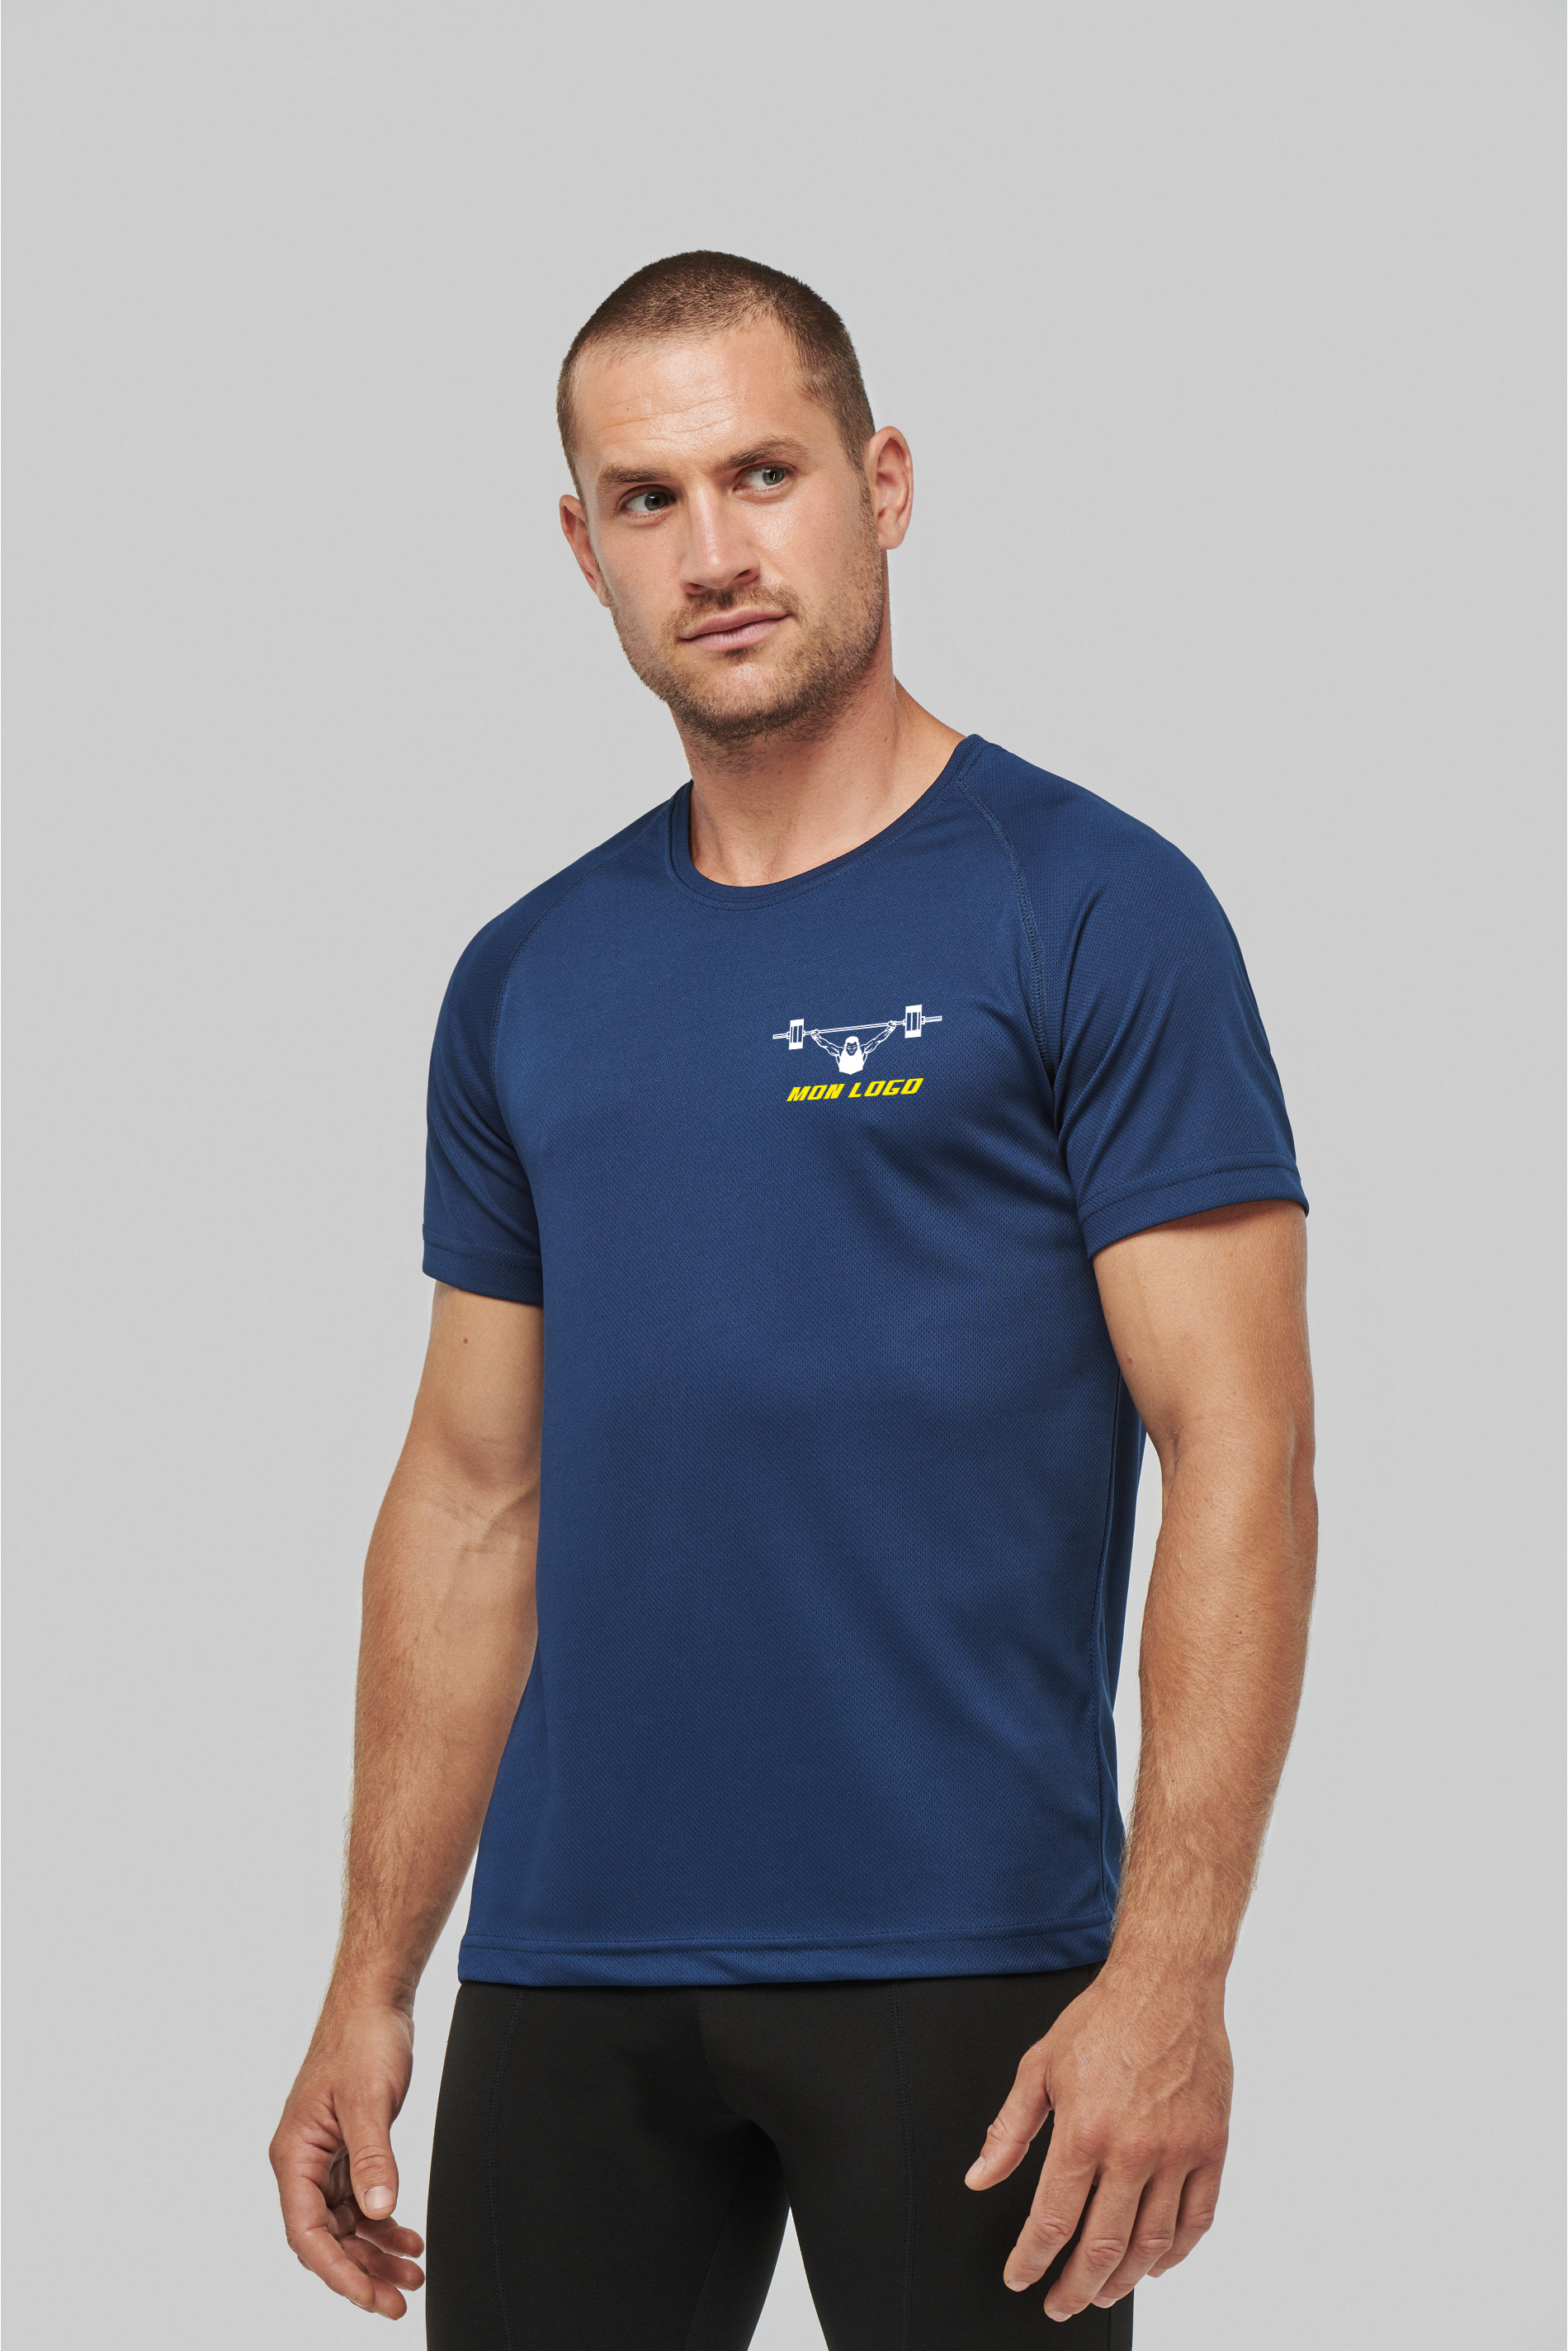 T-shirt sport homme - personnalisé 003 